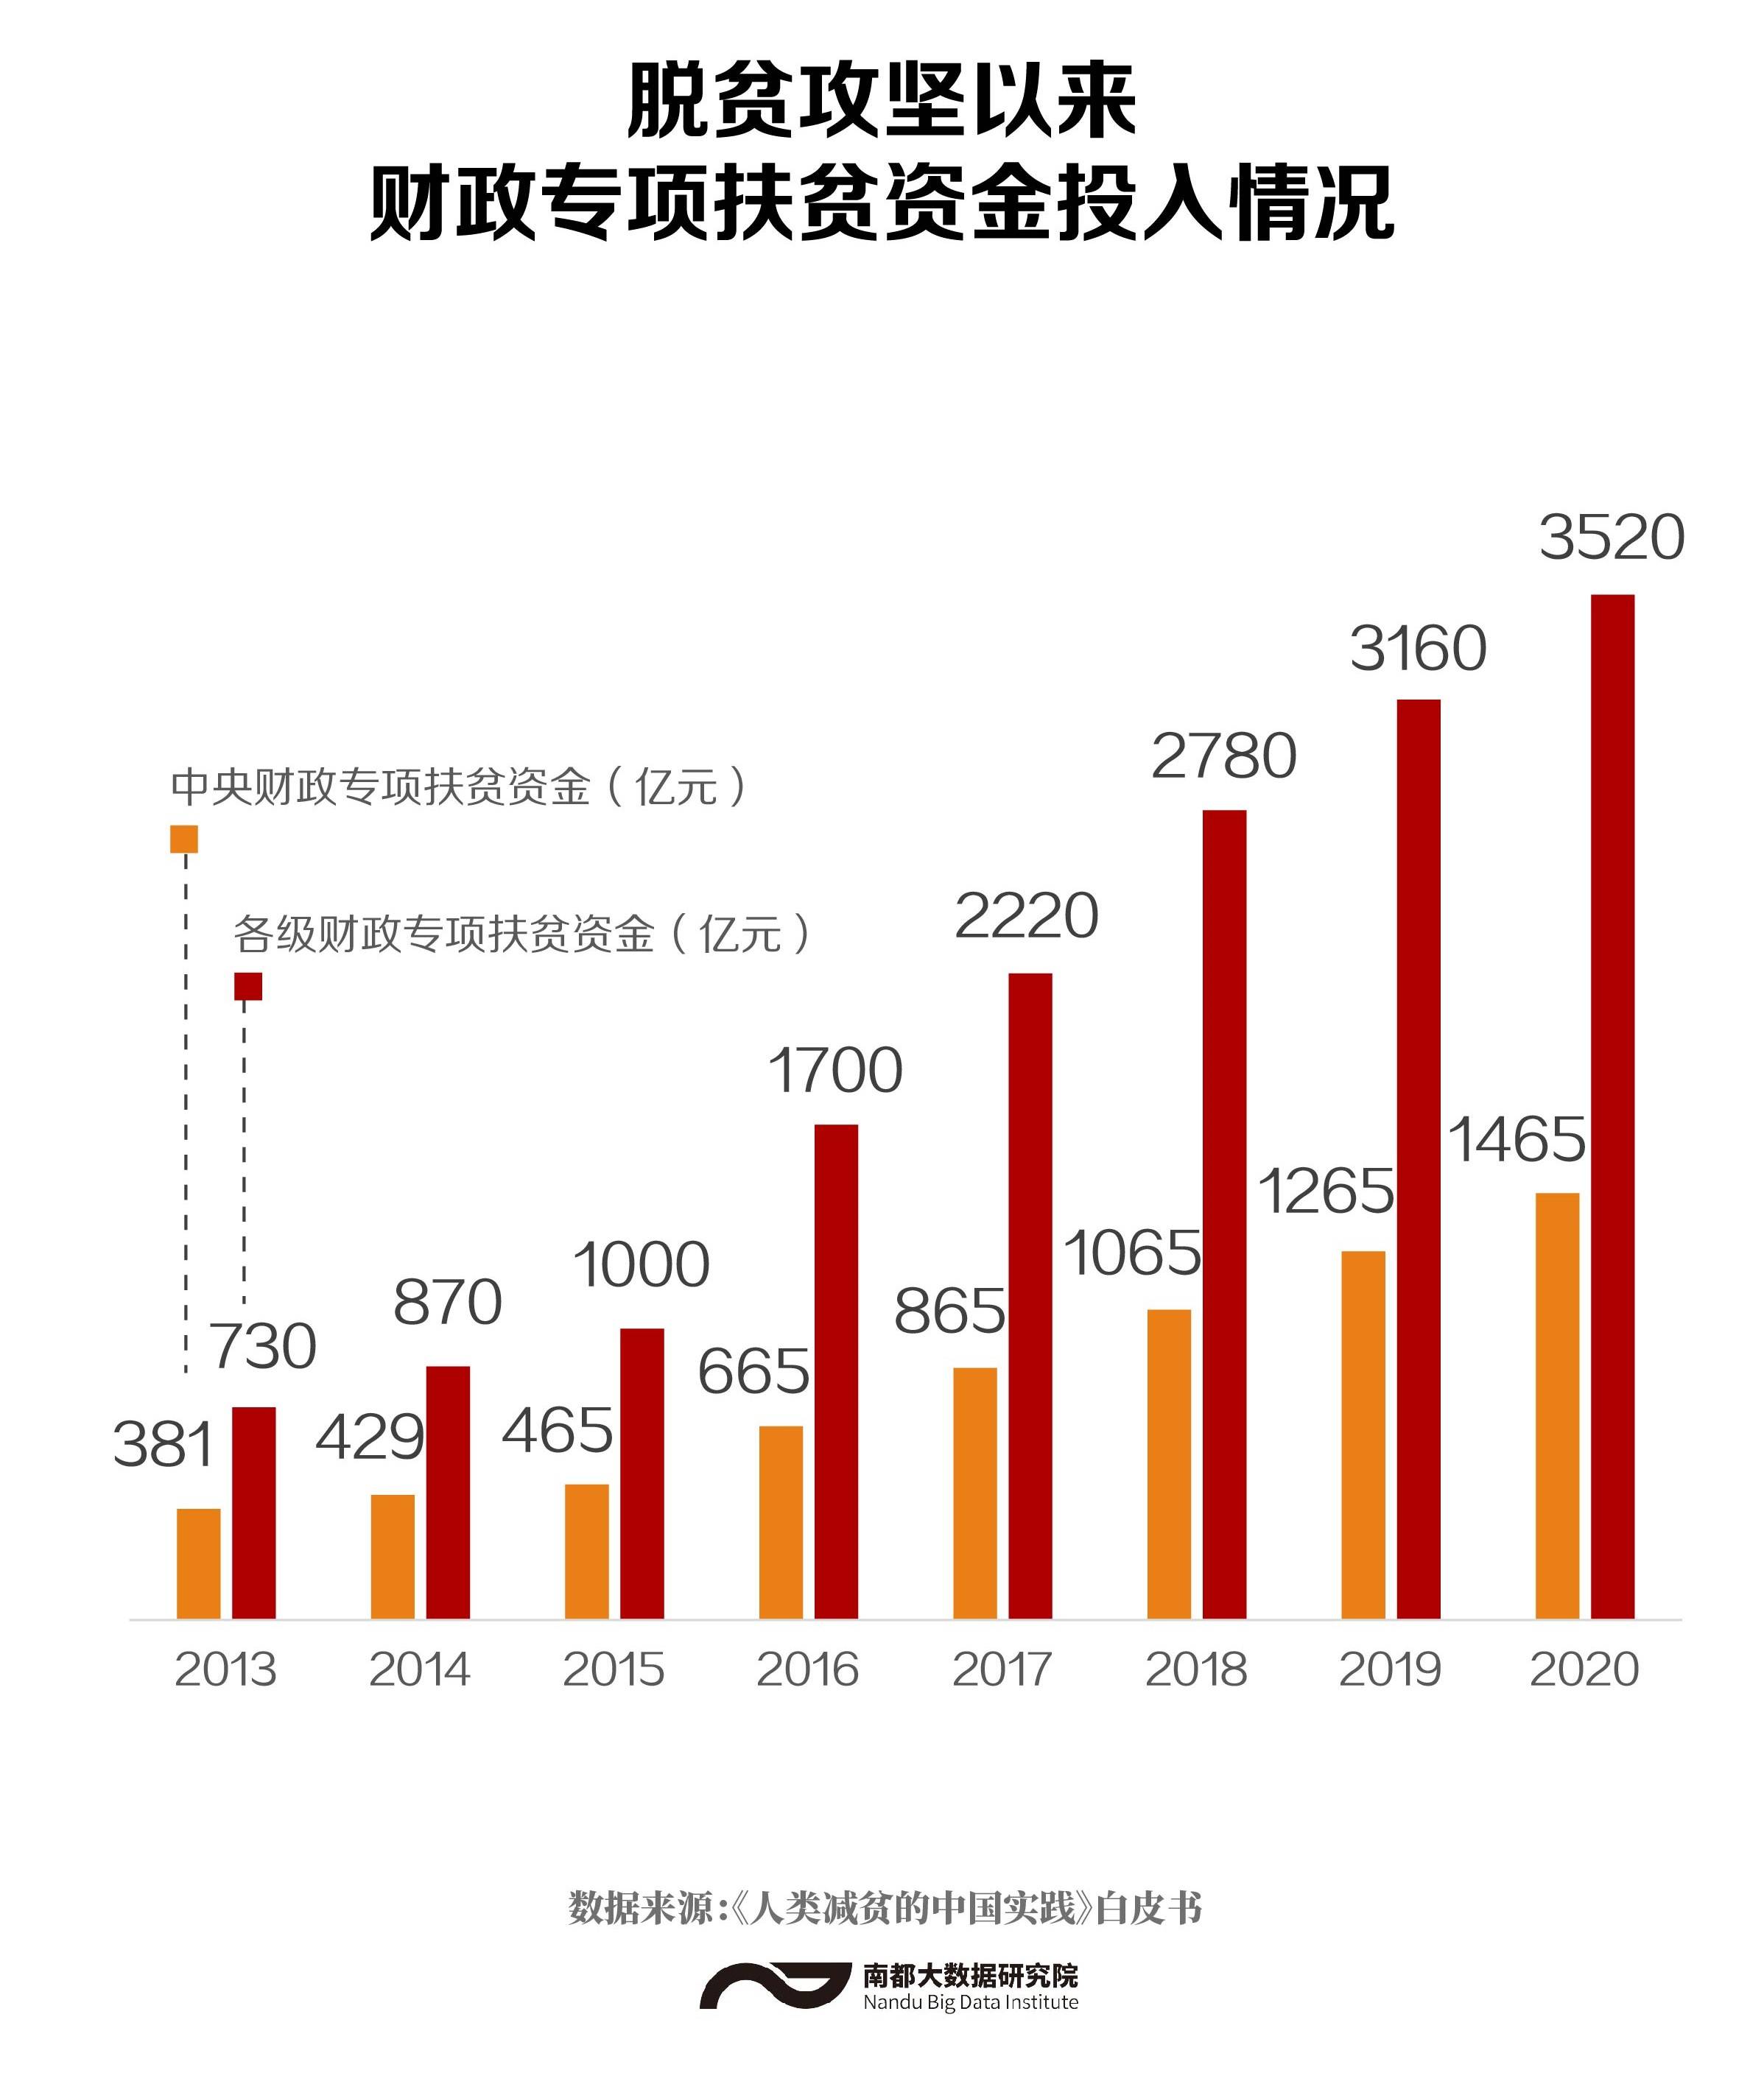 多图看懂中国减贫路!贫困农村居民人均收入已超12万